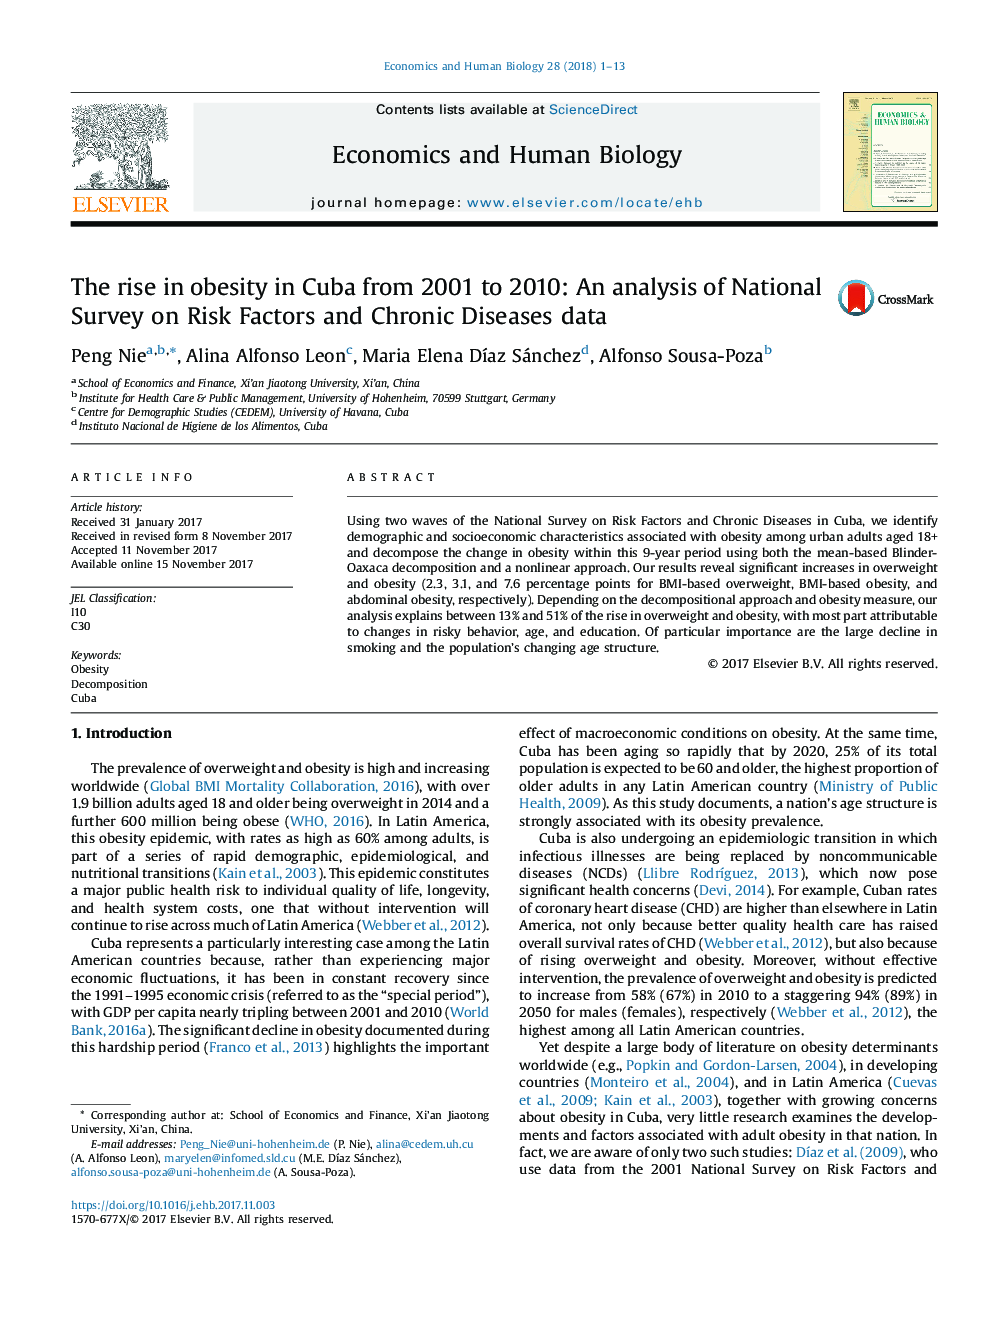 افزایش چاقی در کوبا از سال 2001 تا 2010: تجزیه و تحلیل ارزیابی ملی در مورد عوامل خطر و بیماری های مزمن 